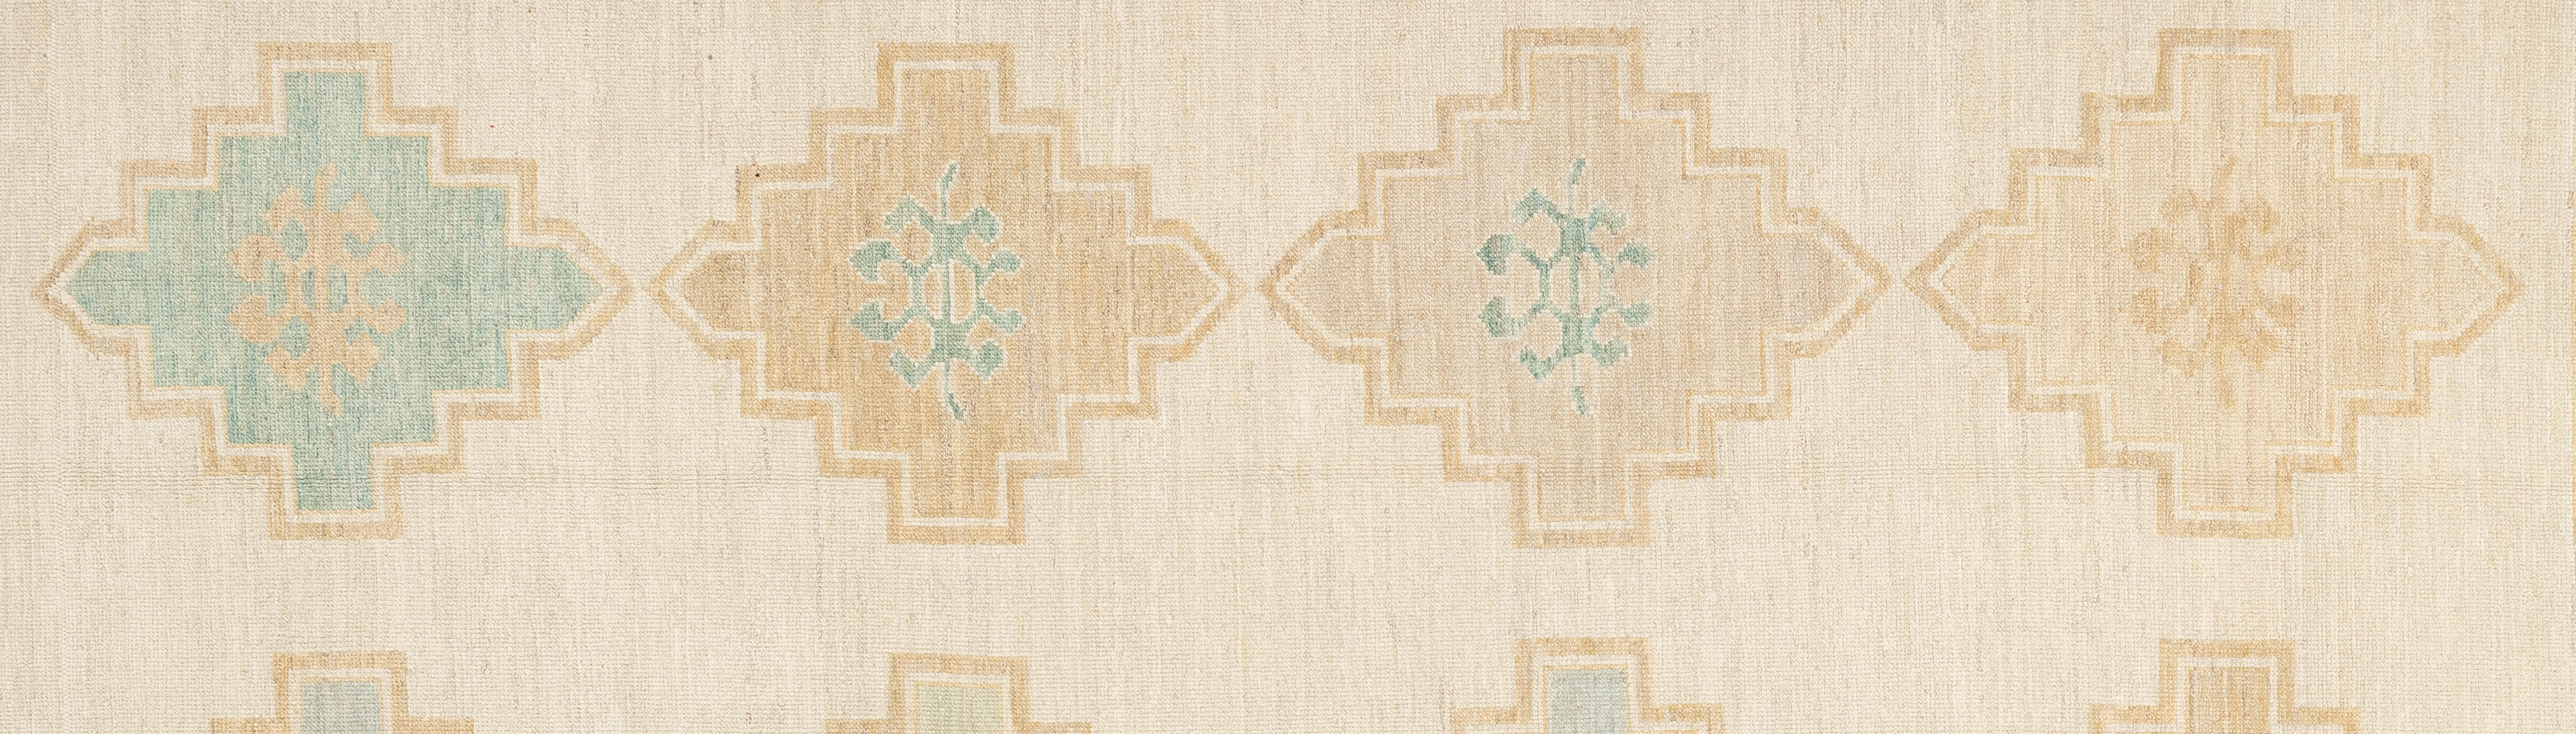 Cet exquis tapis turc Oushak est une véritable œuvre d'art, habilement tissée à la main par des artisans expérimentés selon des méthodes traditionnelles. Orné de motifs complexes et d'une palette de couleurs douces obtenues à partir de teintures